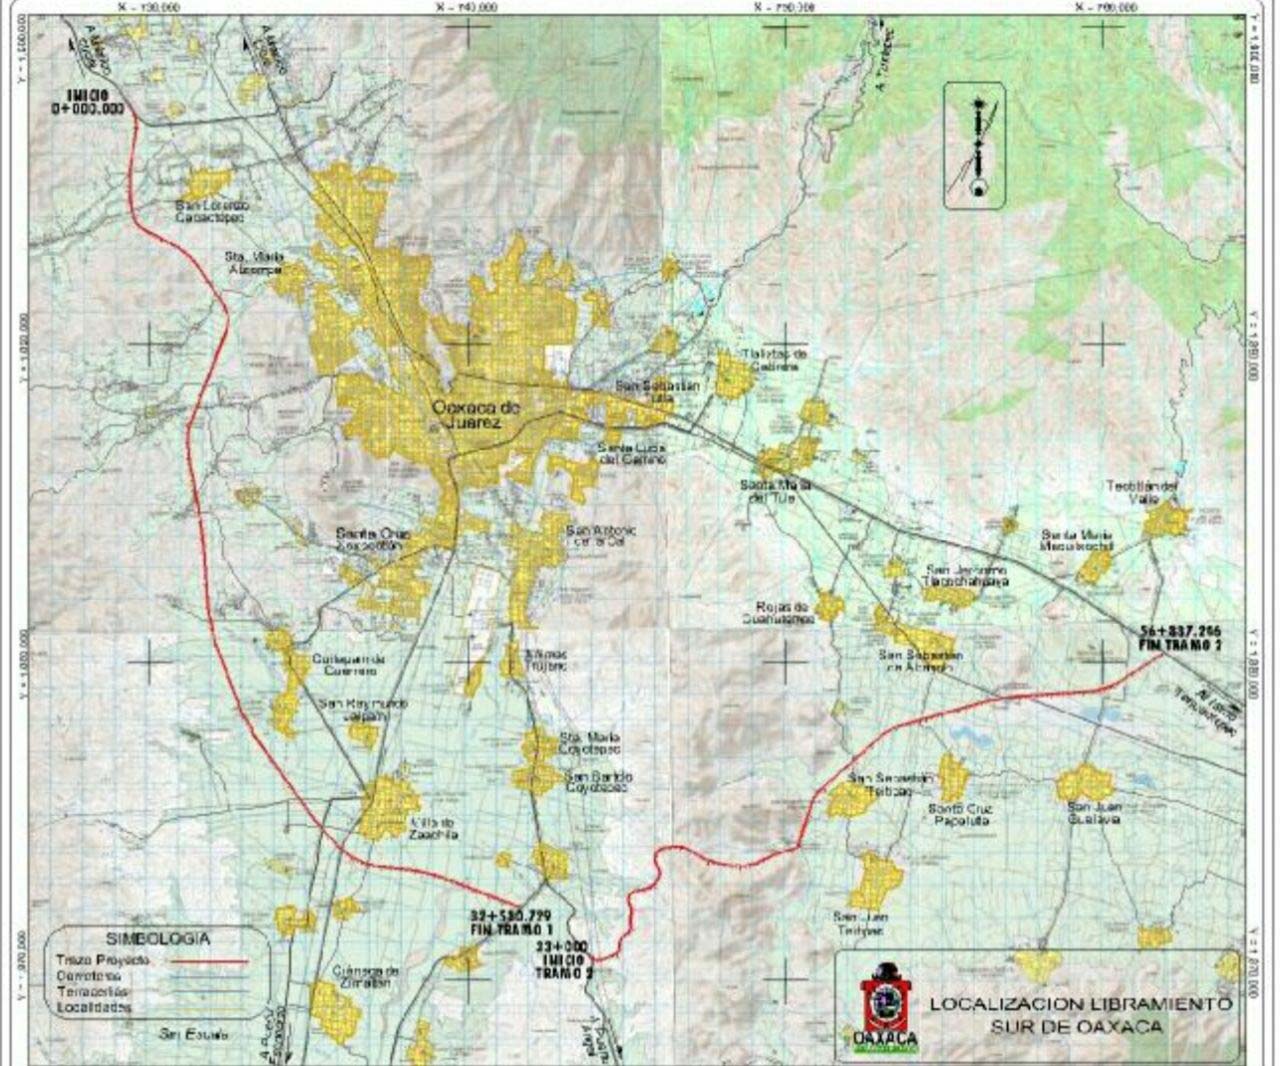 Libramiento Sur de Oaxaca, campesinos de Zaachila afirman “quieren quitarnos las tierras”